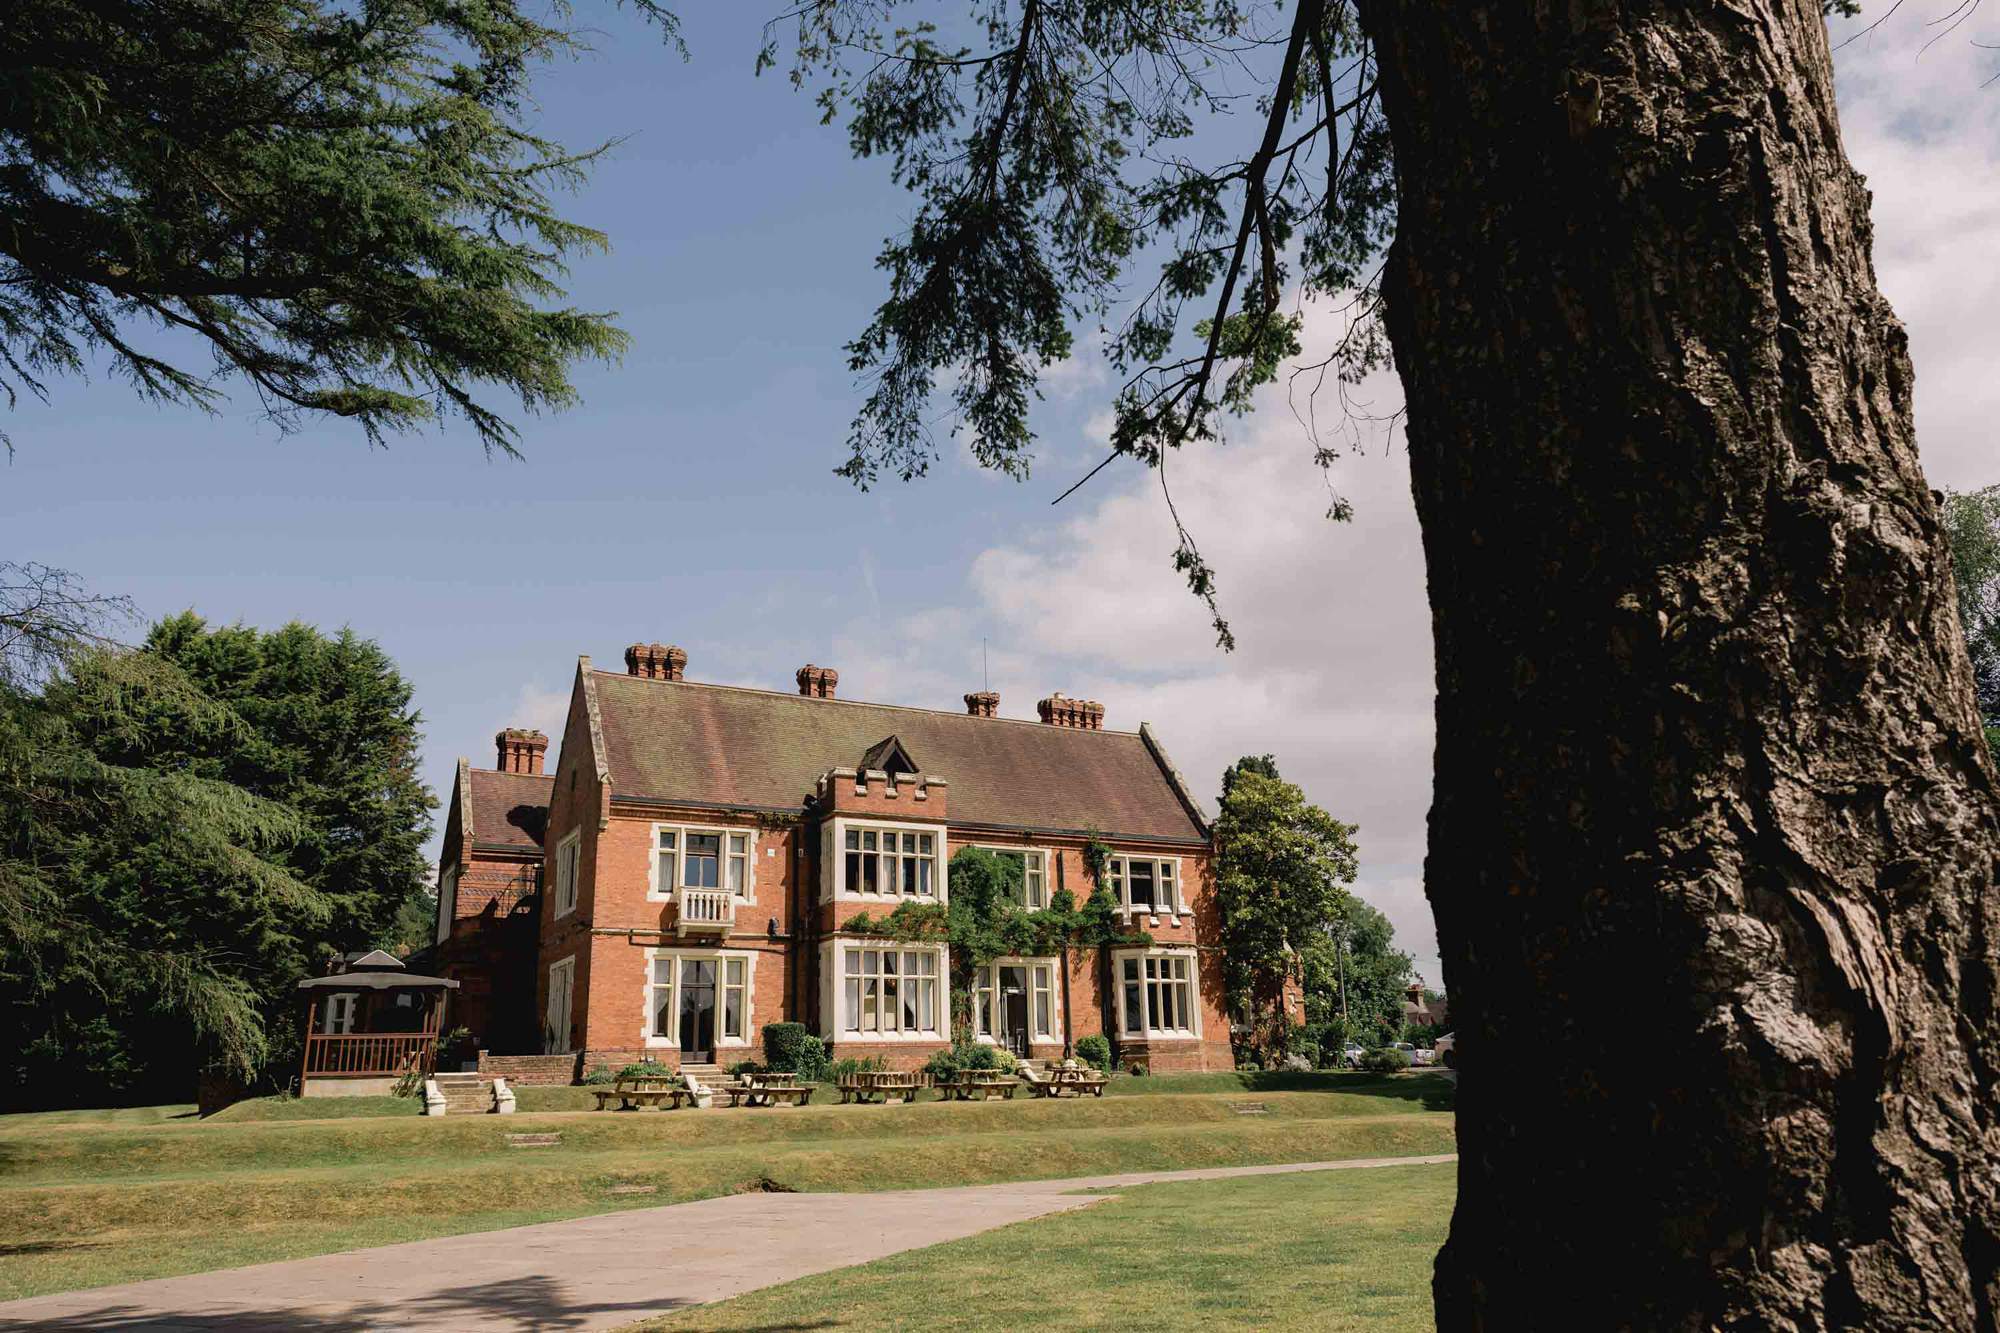 Highley Manor wedding venue in Sussex.